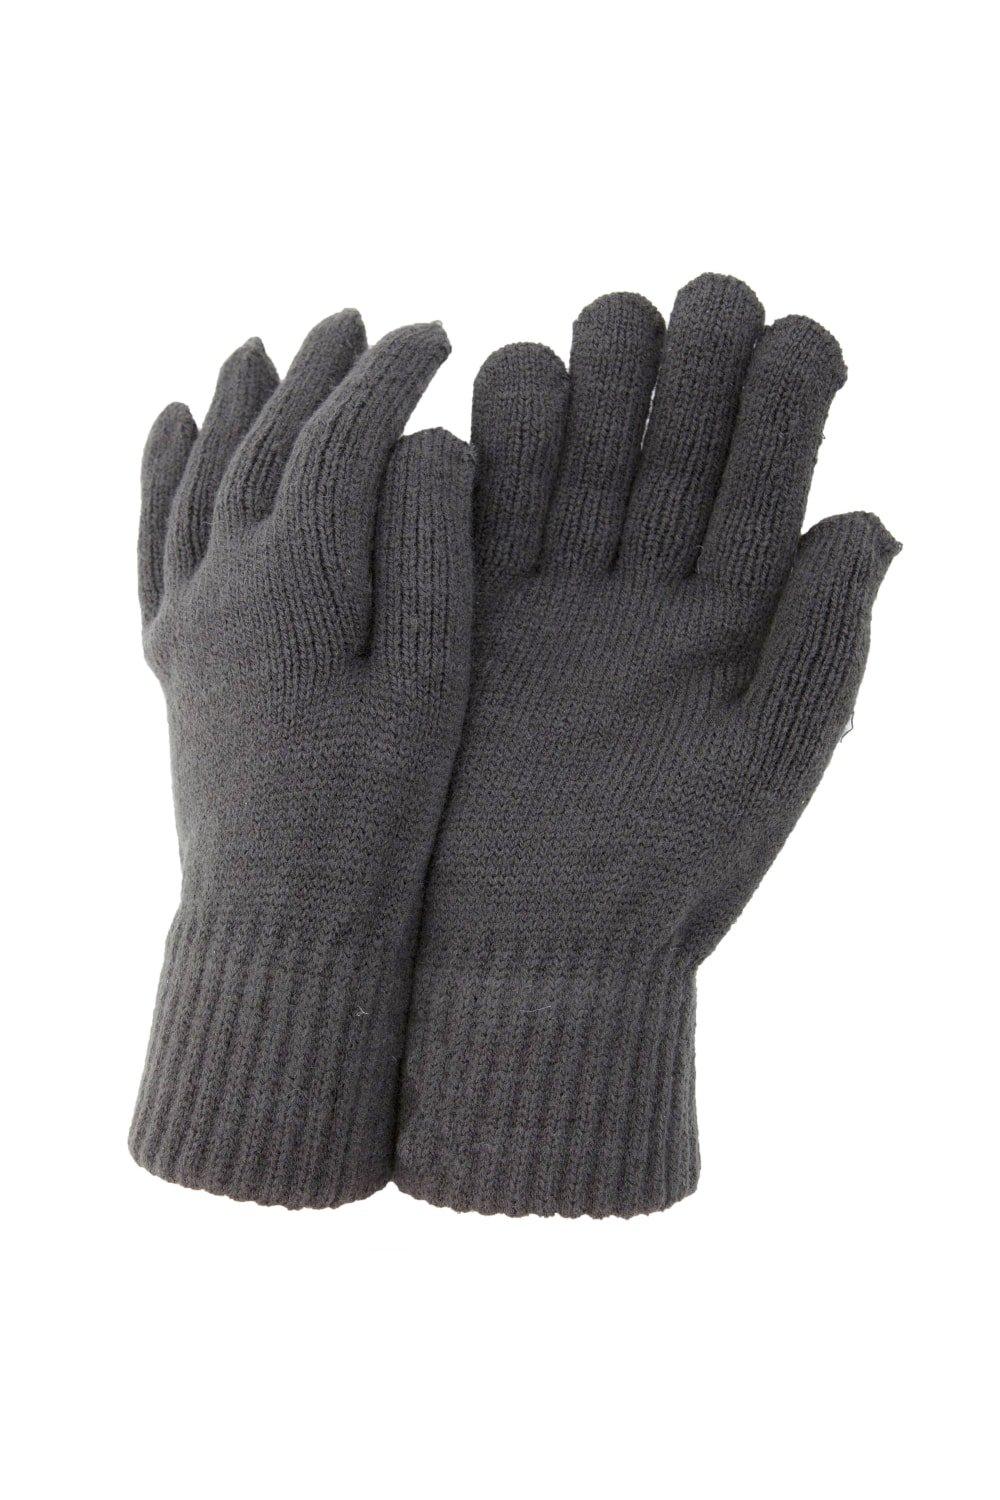 РАСПРОДАЖА - Термовязаные зимние перчатки Universal Textiles, серый перчатки трикотажные 5 пар